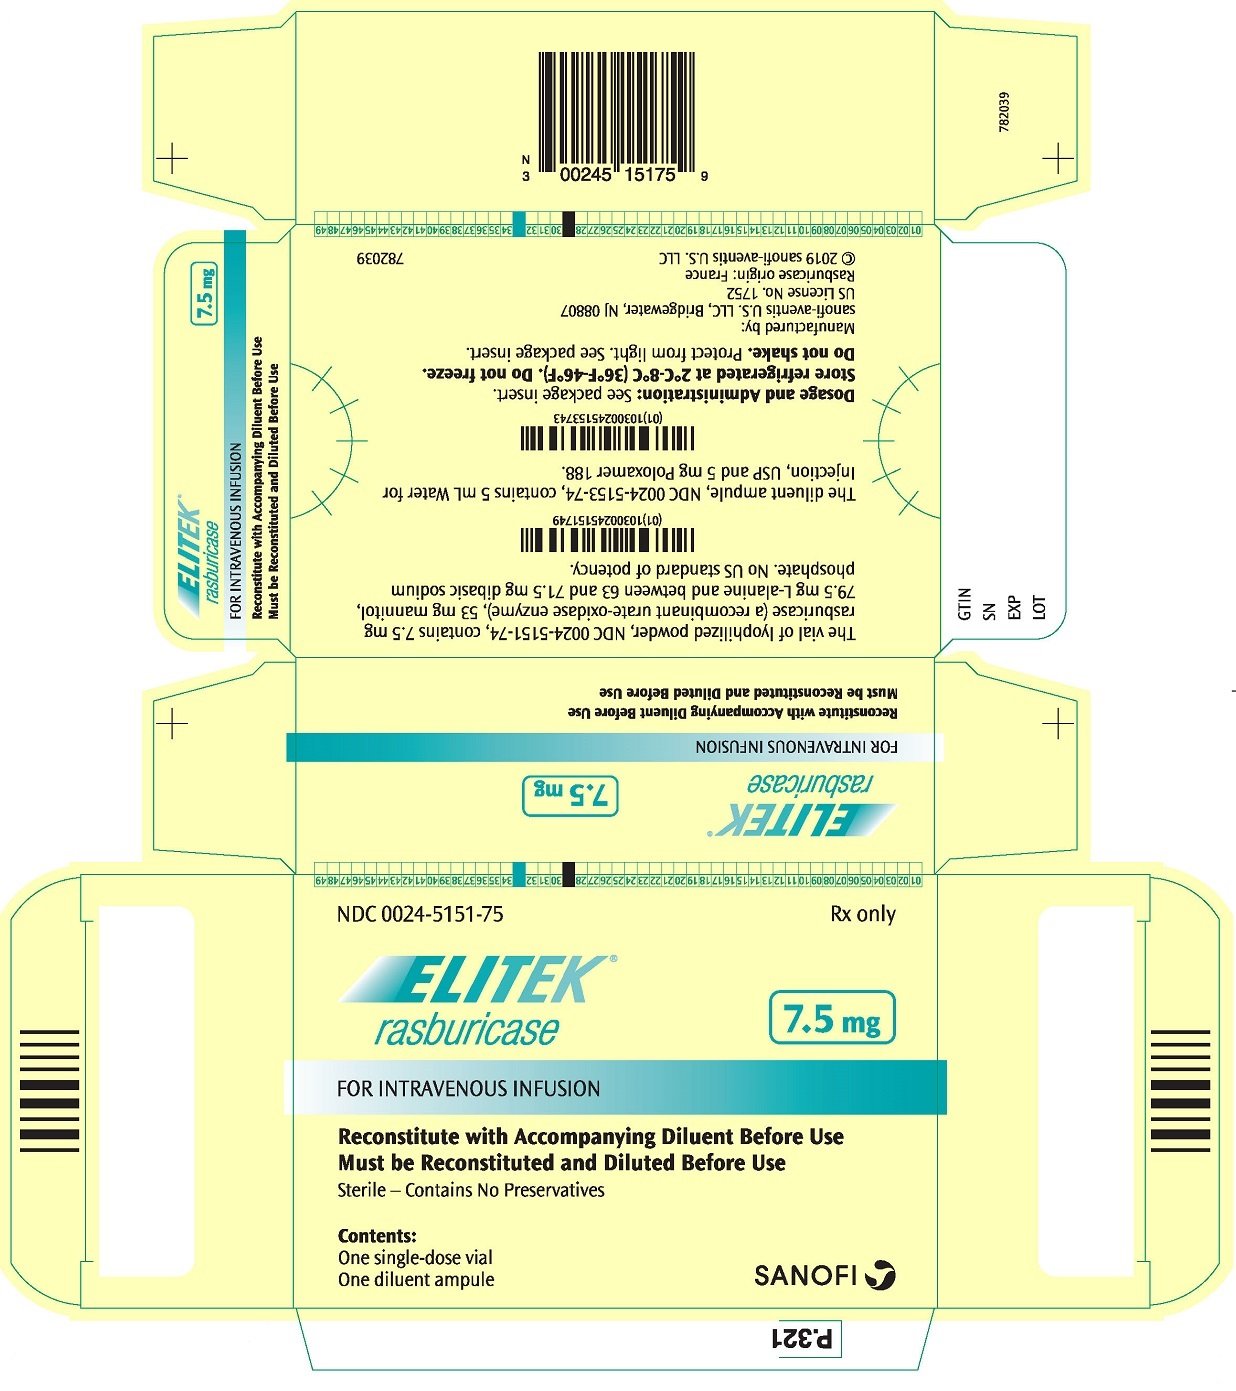 PRINCIPAL DISPLAY PANEL - 7.5 mg Kit Carton